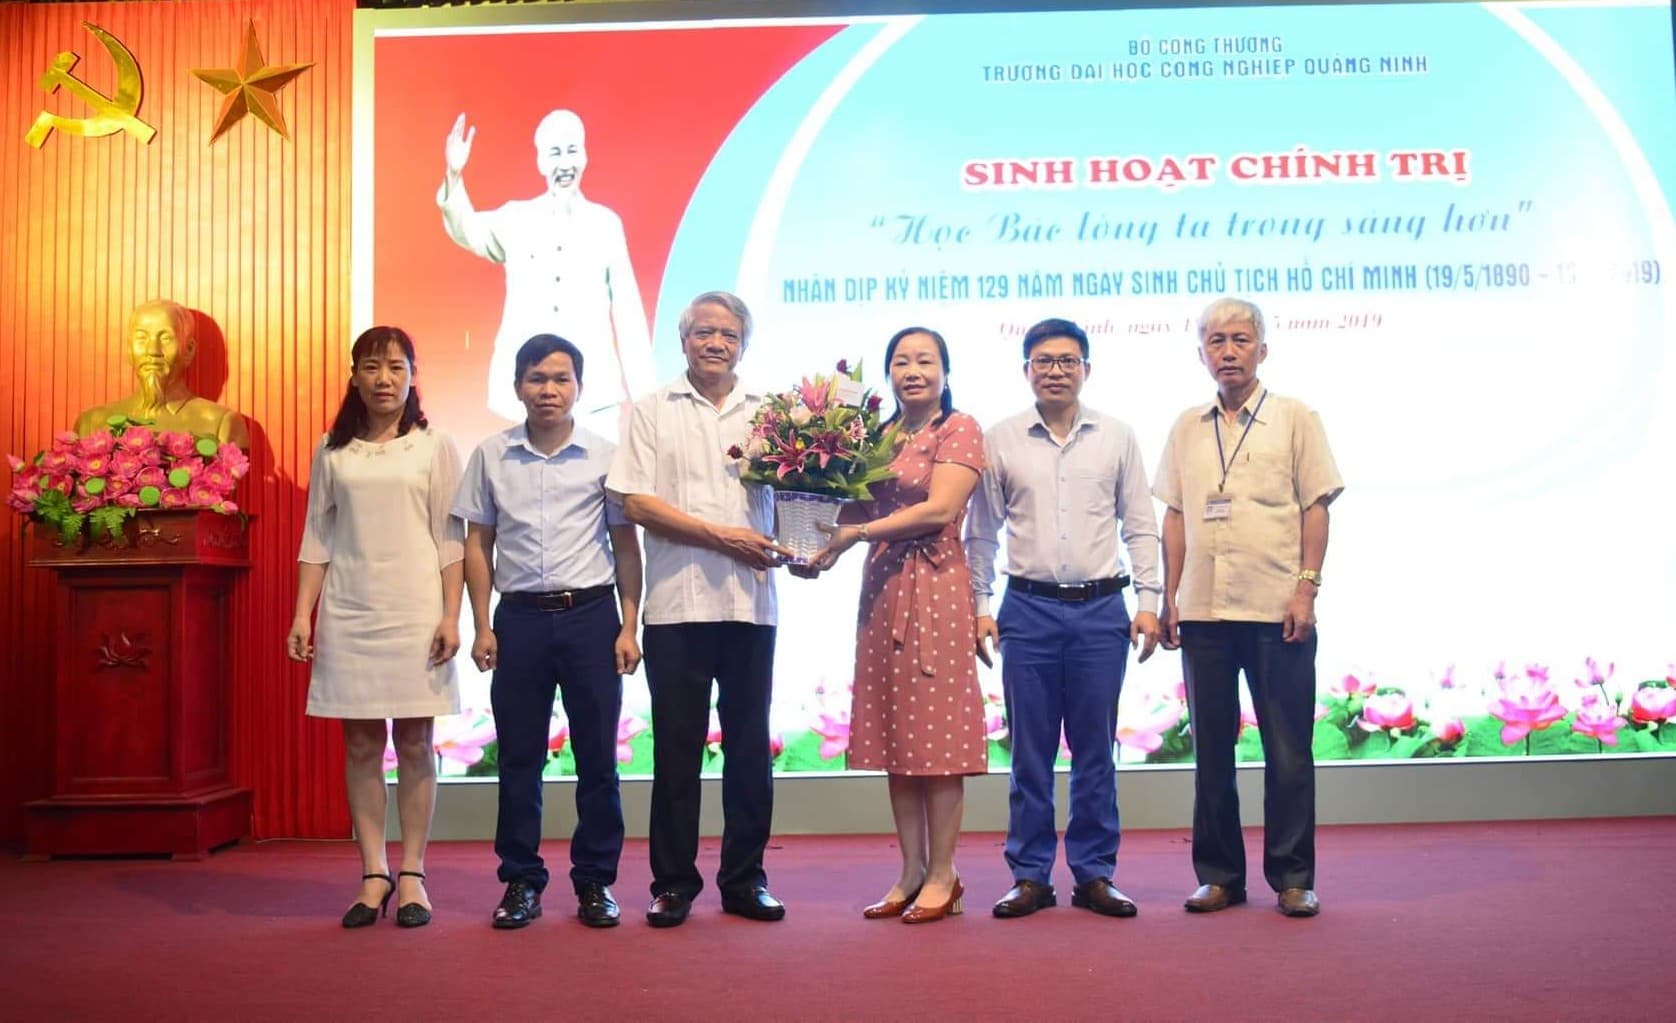 Trường Đại học Công nghiệp Quảng Ninh tổ chức nói chuyện chuyên đề “Học tập và làm theo tư tưởng, tấm gương đạo đức, phong cách Hồ Chí Minh” năm 2019